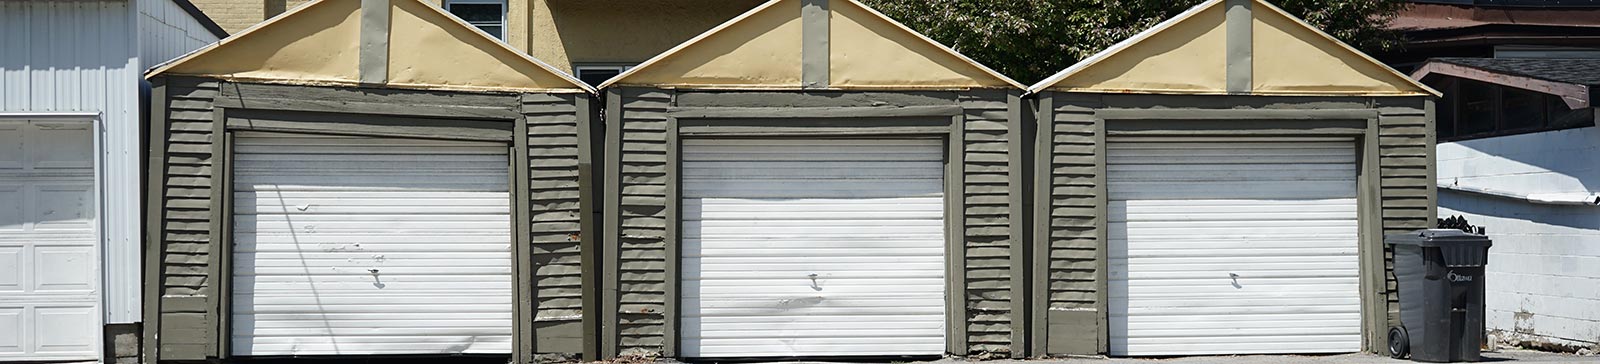 Garage Door Maintenance Near Me | Van Nuys, CA